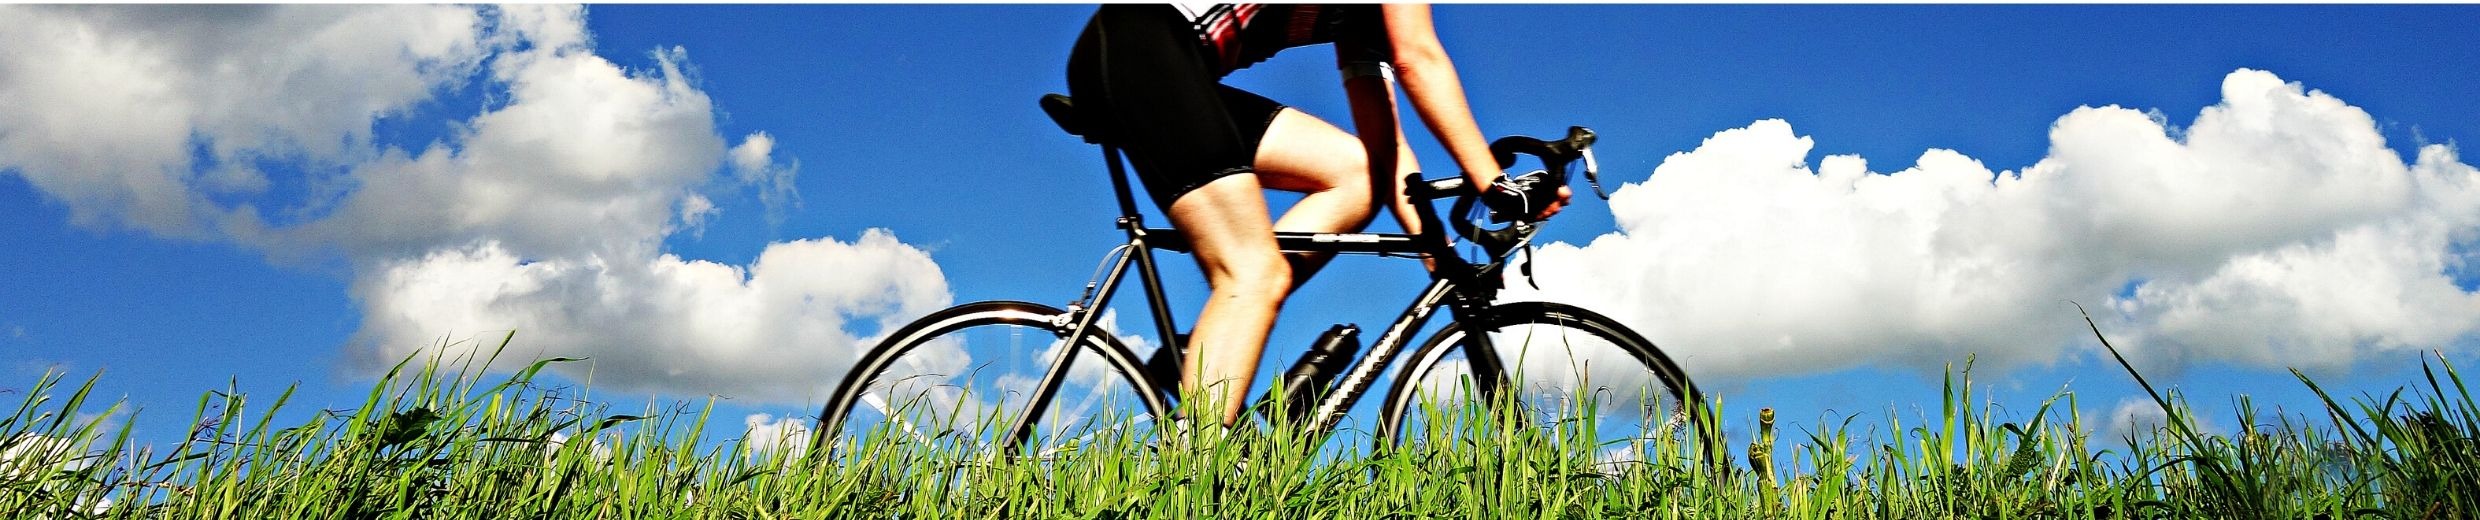 7 преимуществ езды на велосипеде. Аксессуары для велосипедистов